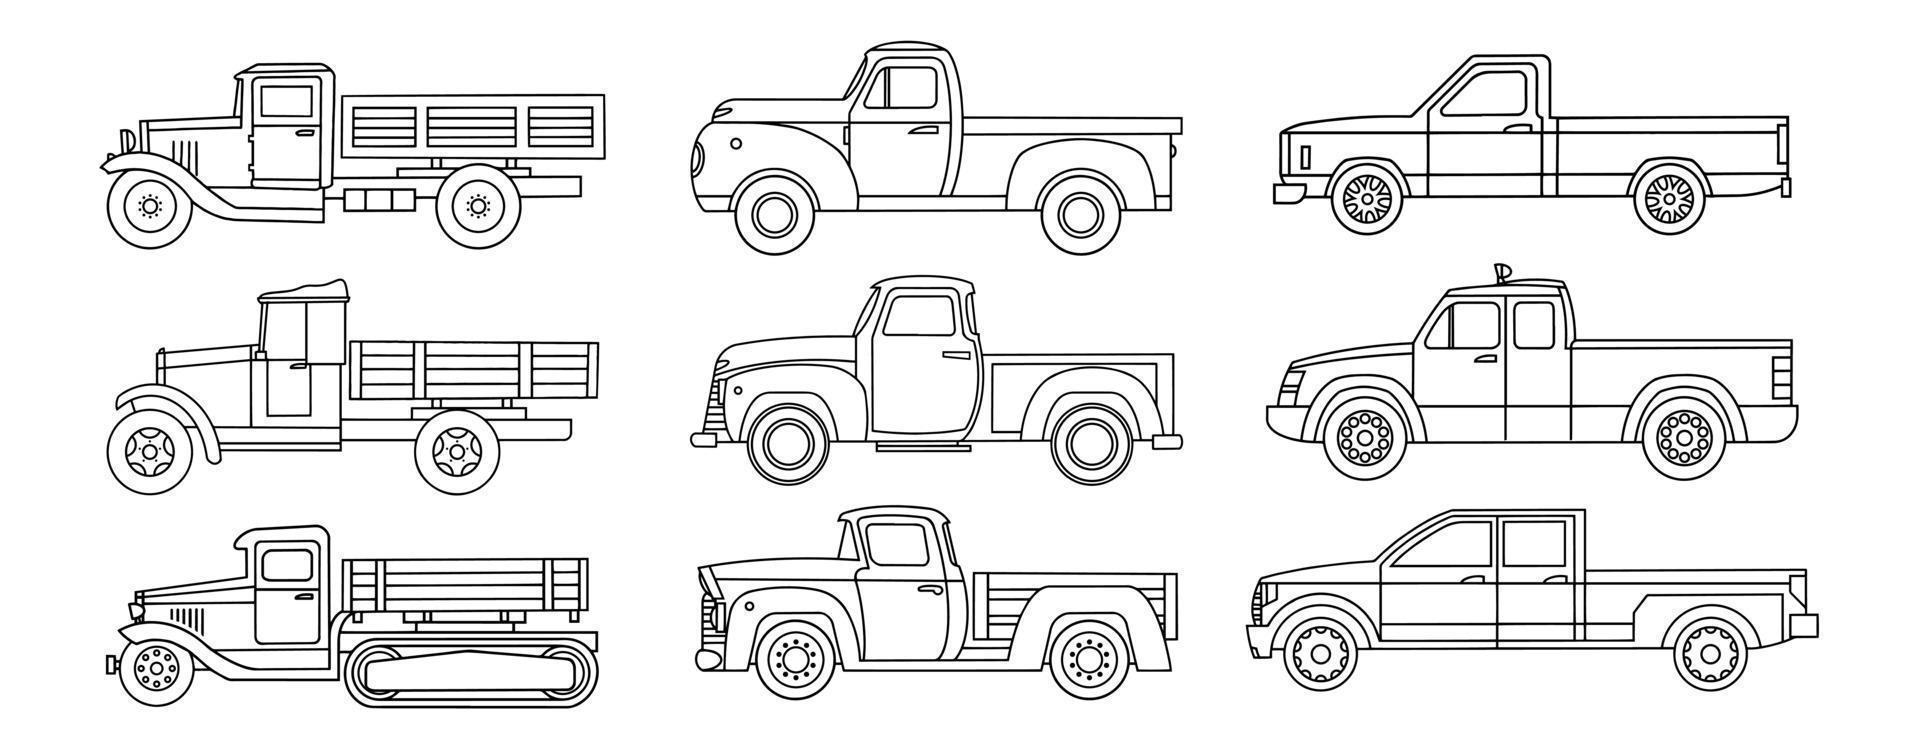 conjunto de camiones antiguos. dibujo lineal para colorear. ilustración vectorial vector